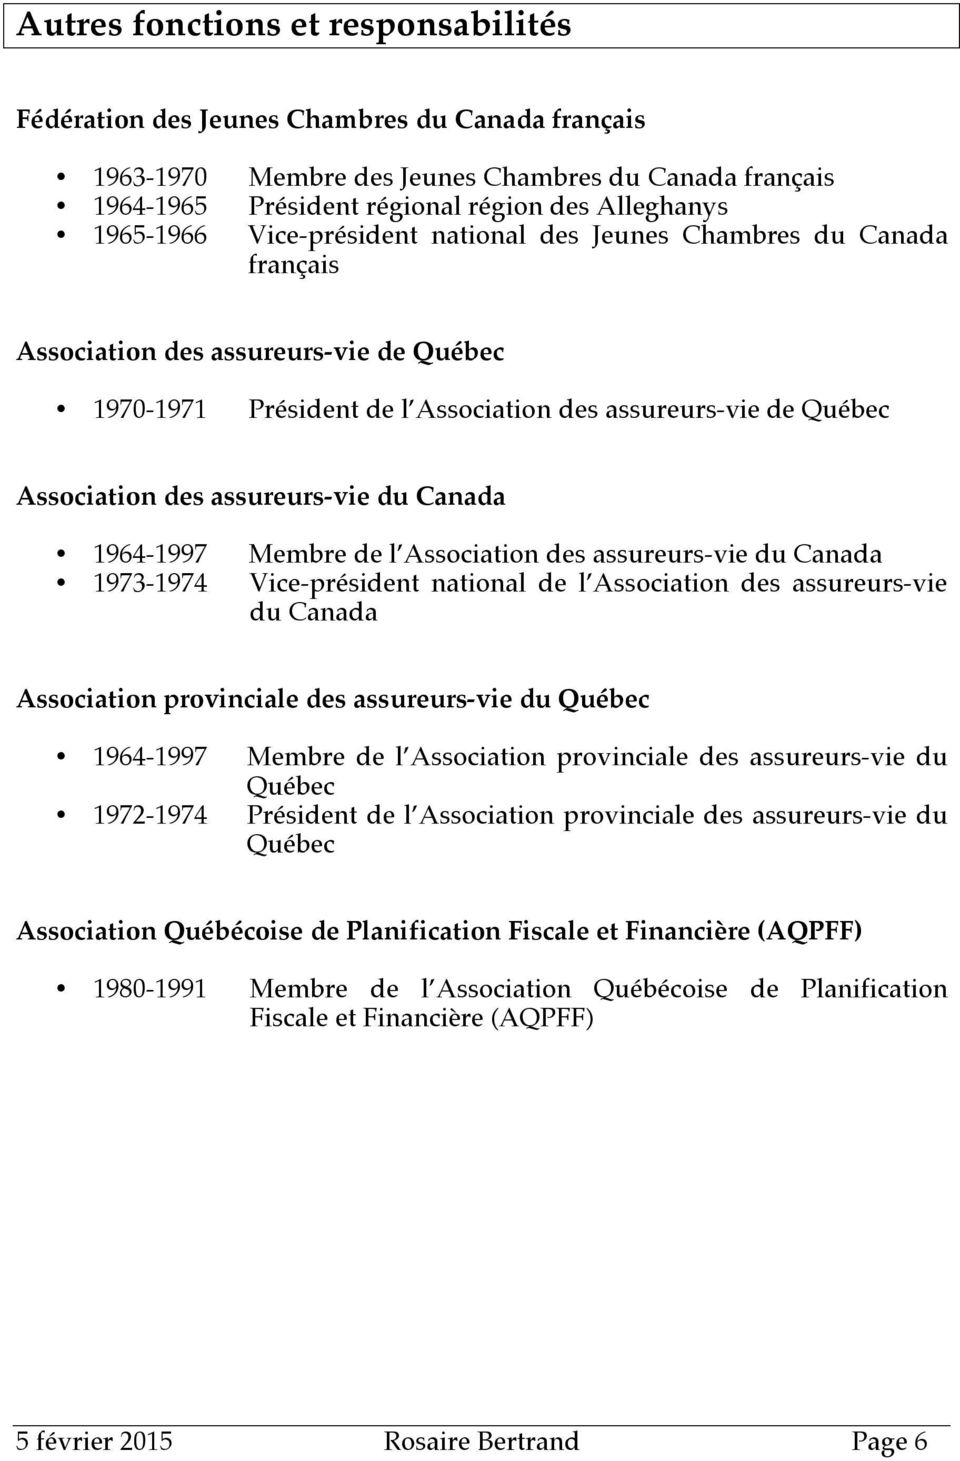 assureurs-vie du Canada 1964-1997 1973-1974 Membre de l Association des assureurs-vie du Canada Vice-président national de l Association des assureurs-vie du Canada Association provinciale des